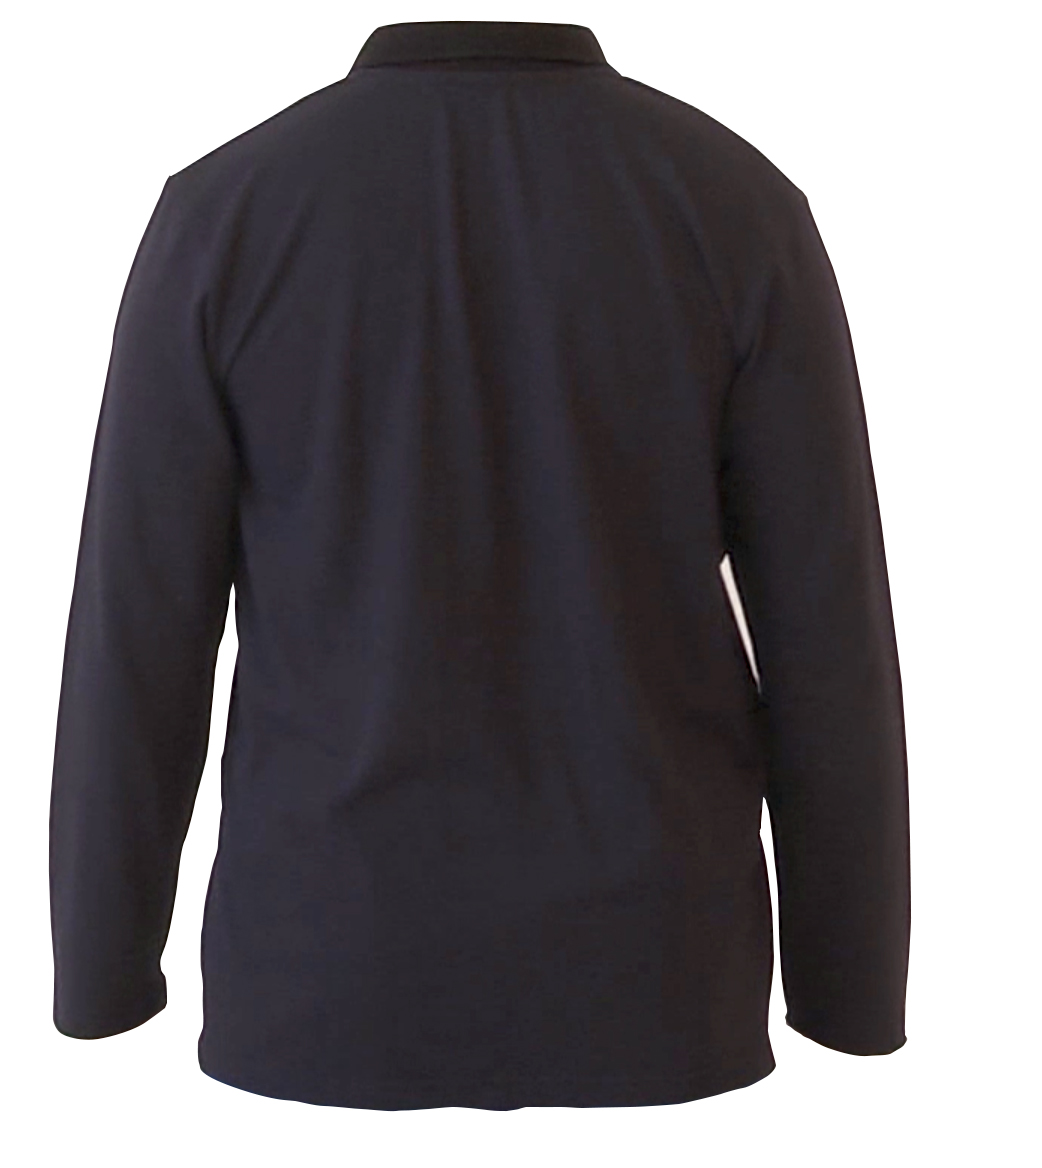 ESD Polo-Shirt Back AQGZ Style Black Unisex XXL Antistatic Clothing ESD Garment - 473.AQGZ-APS21-BKX